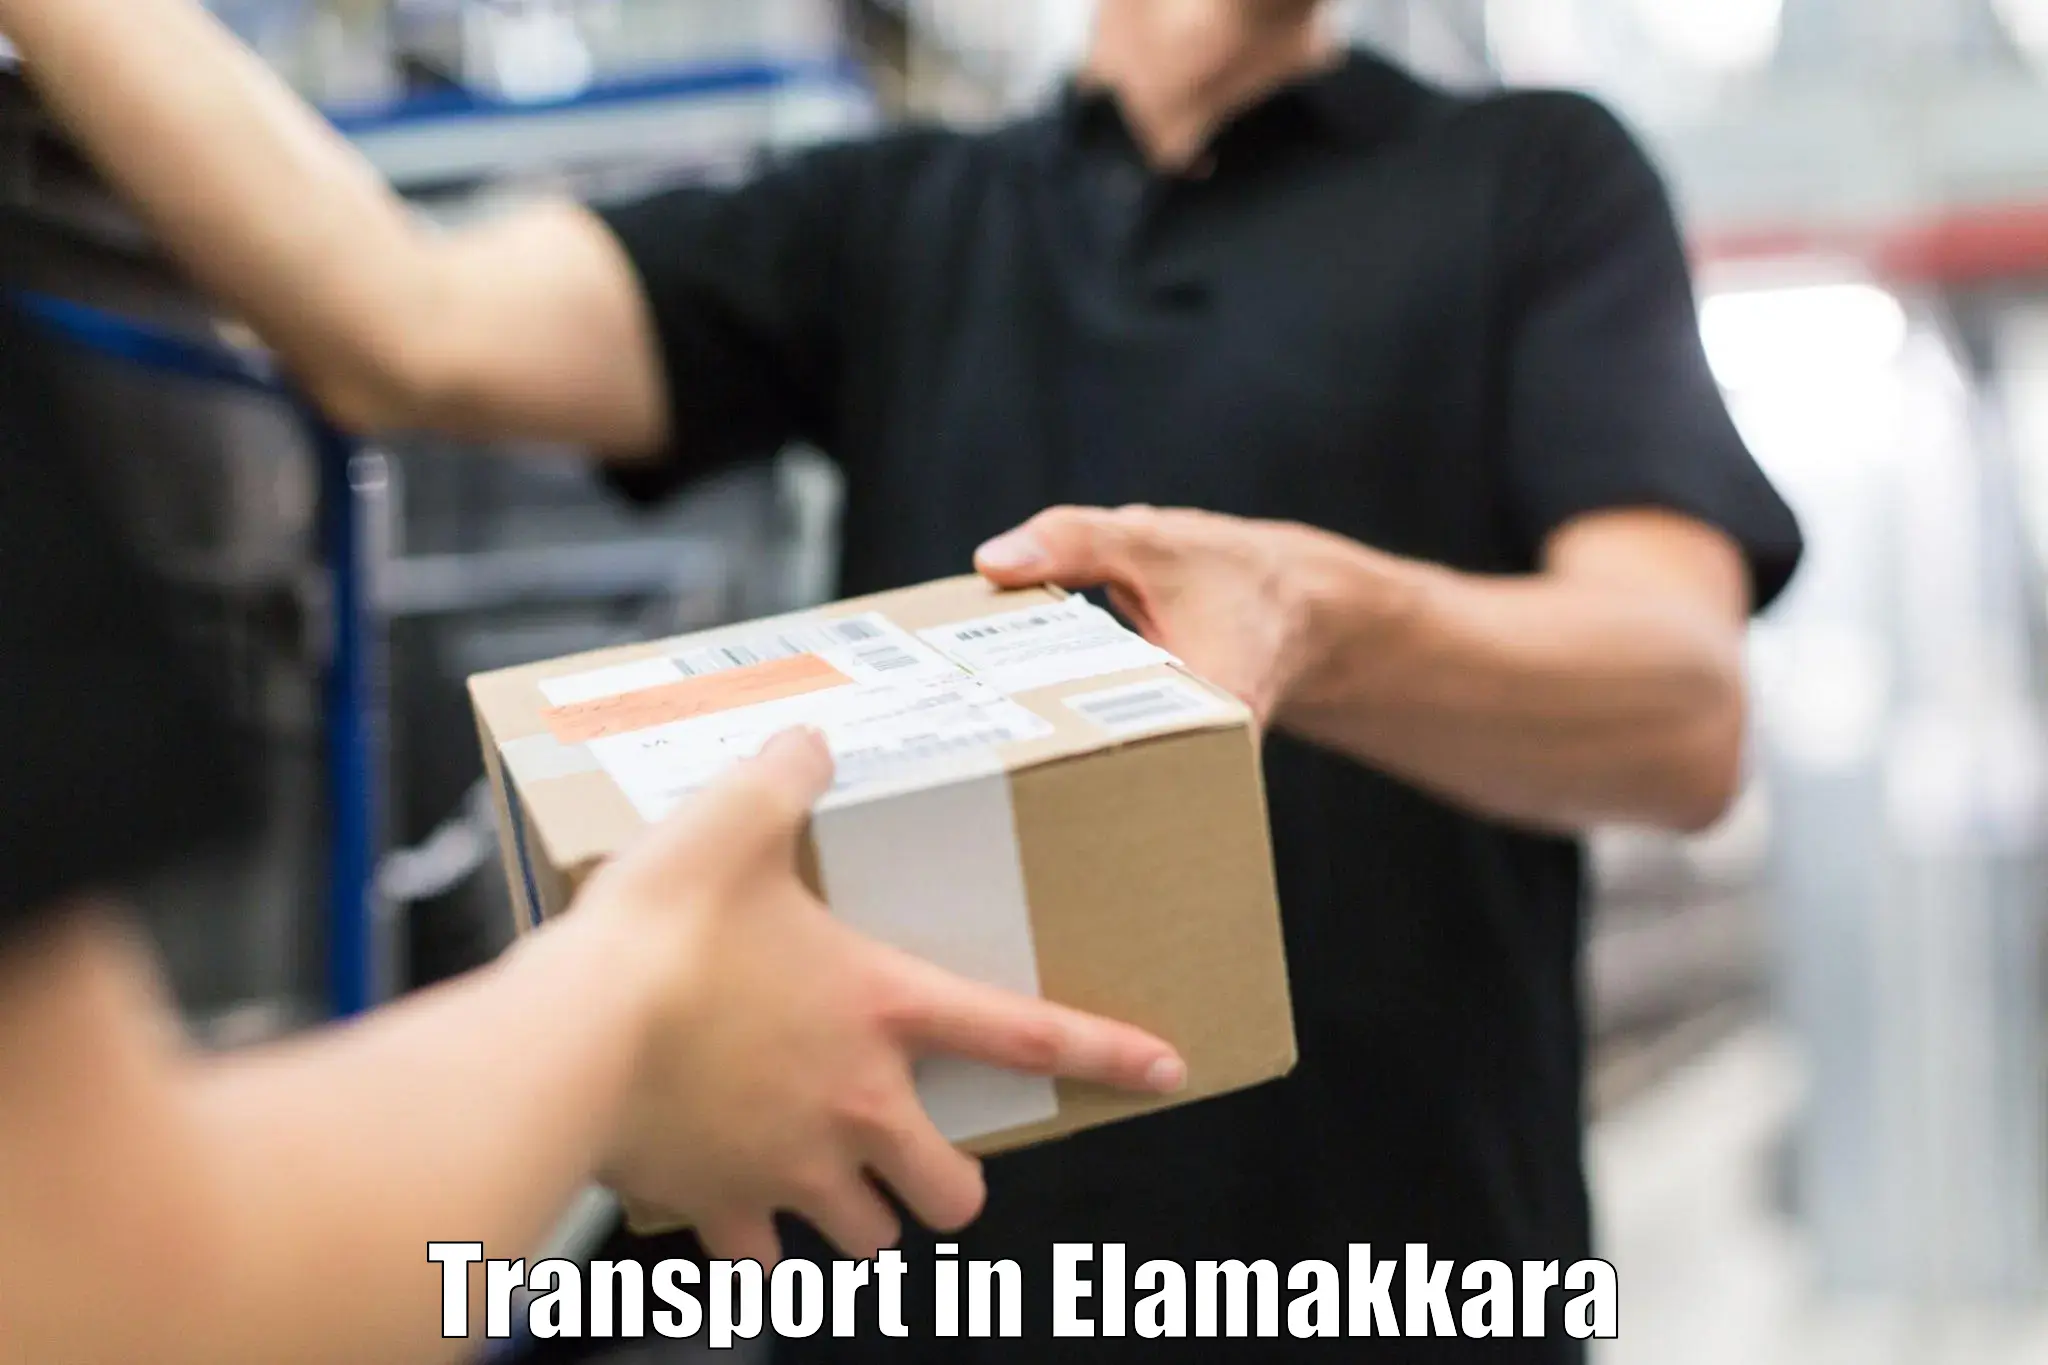 Transportation services in Elamakkara